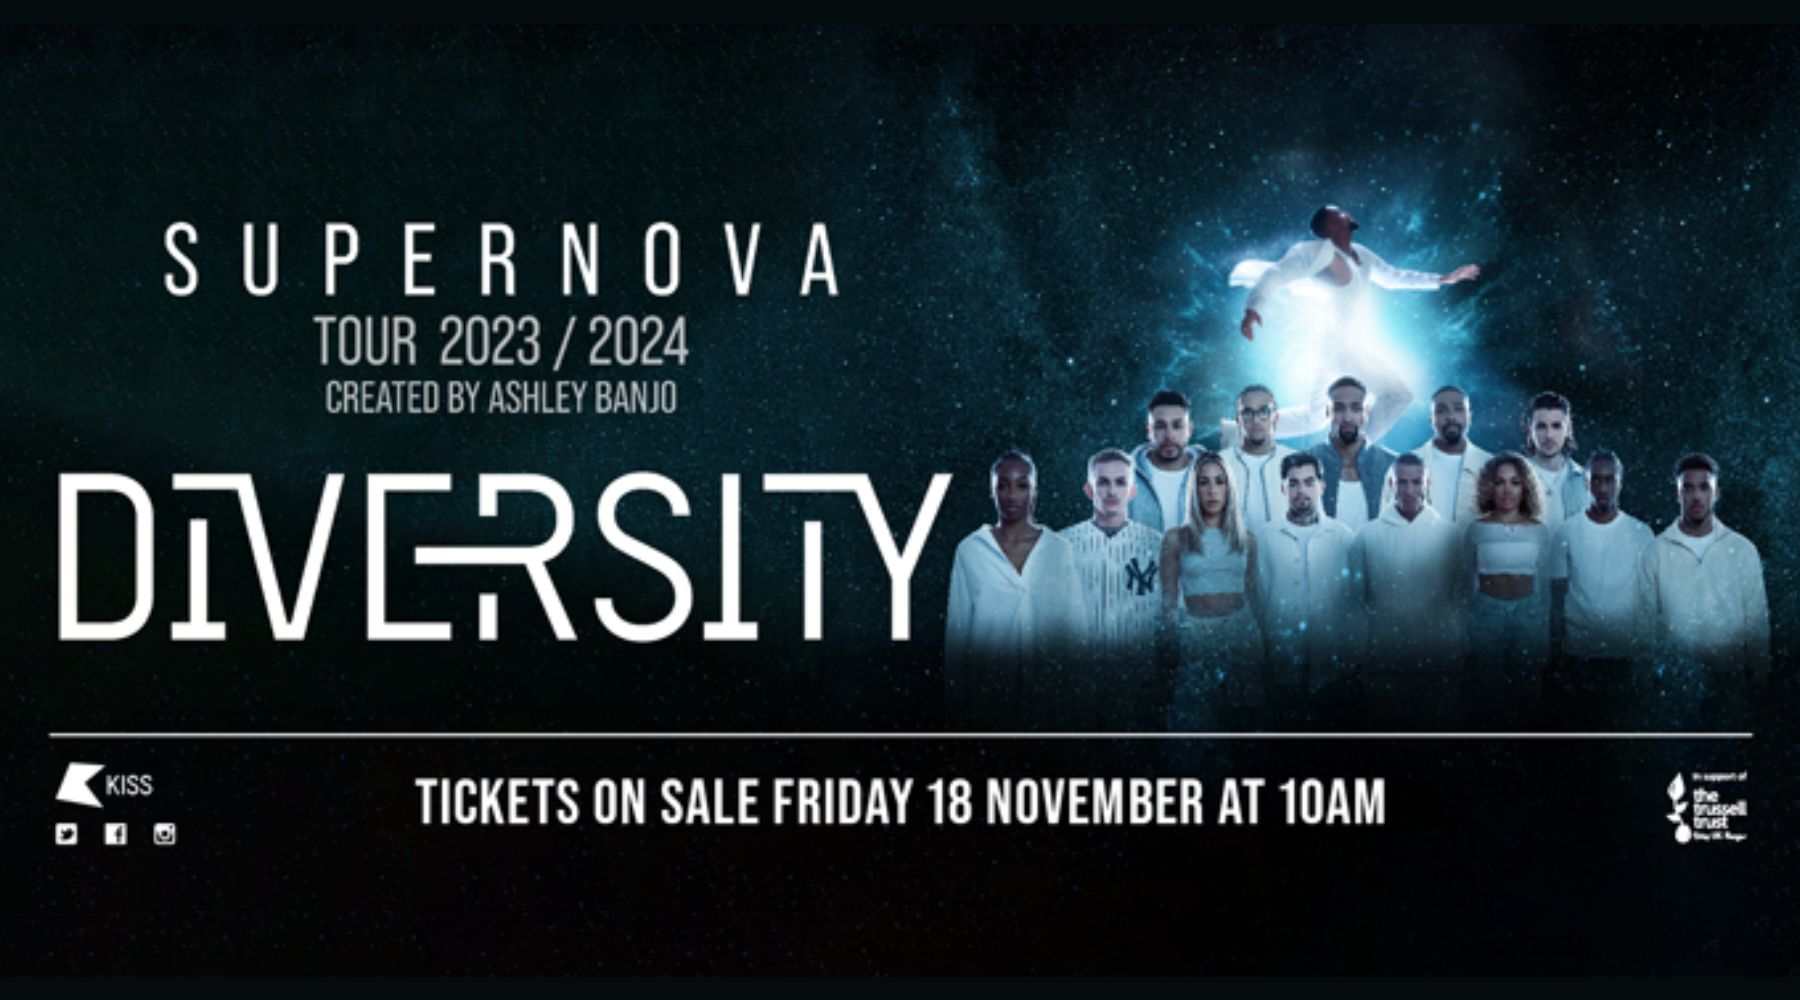 diversity tour 2023 ticket prices